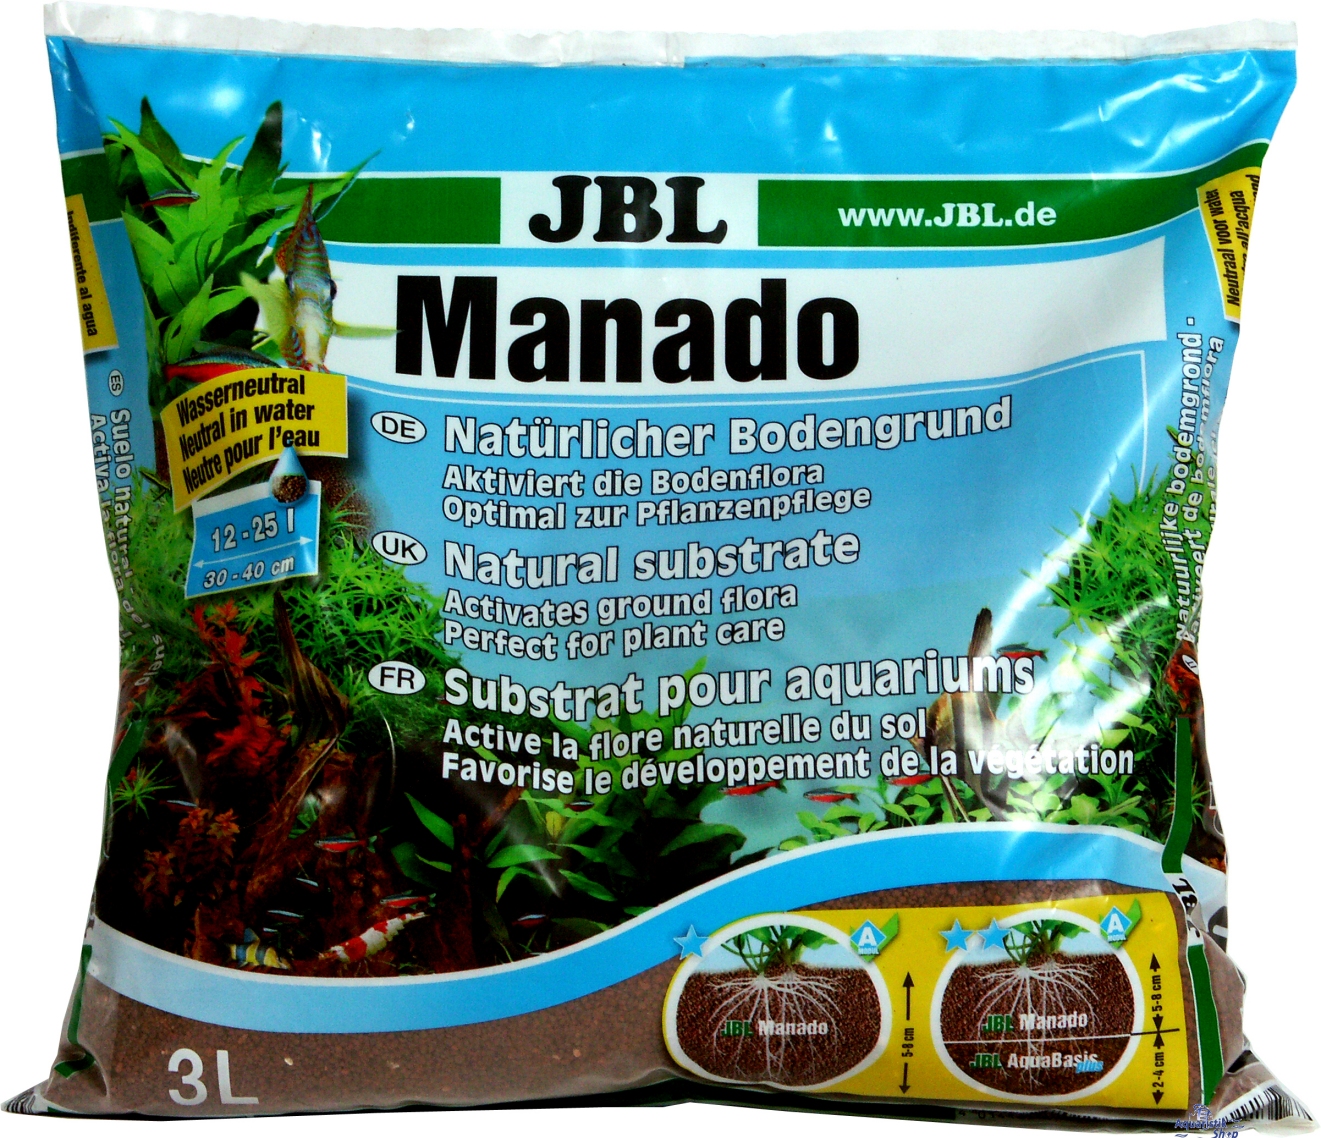 JBL MANADO NATURAL SUBSTRATE